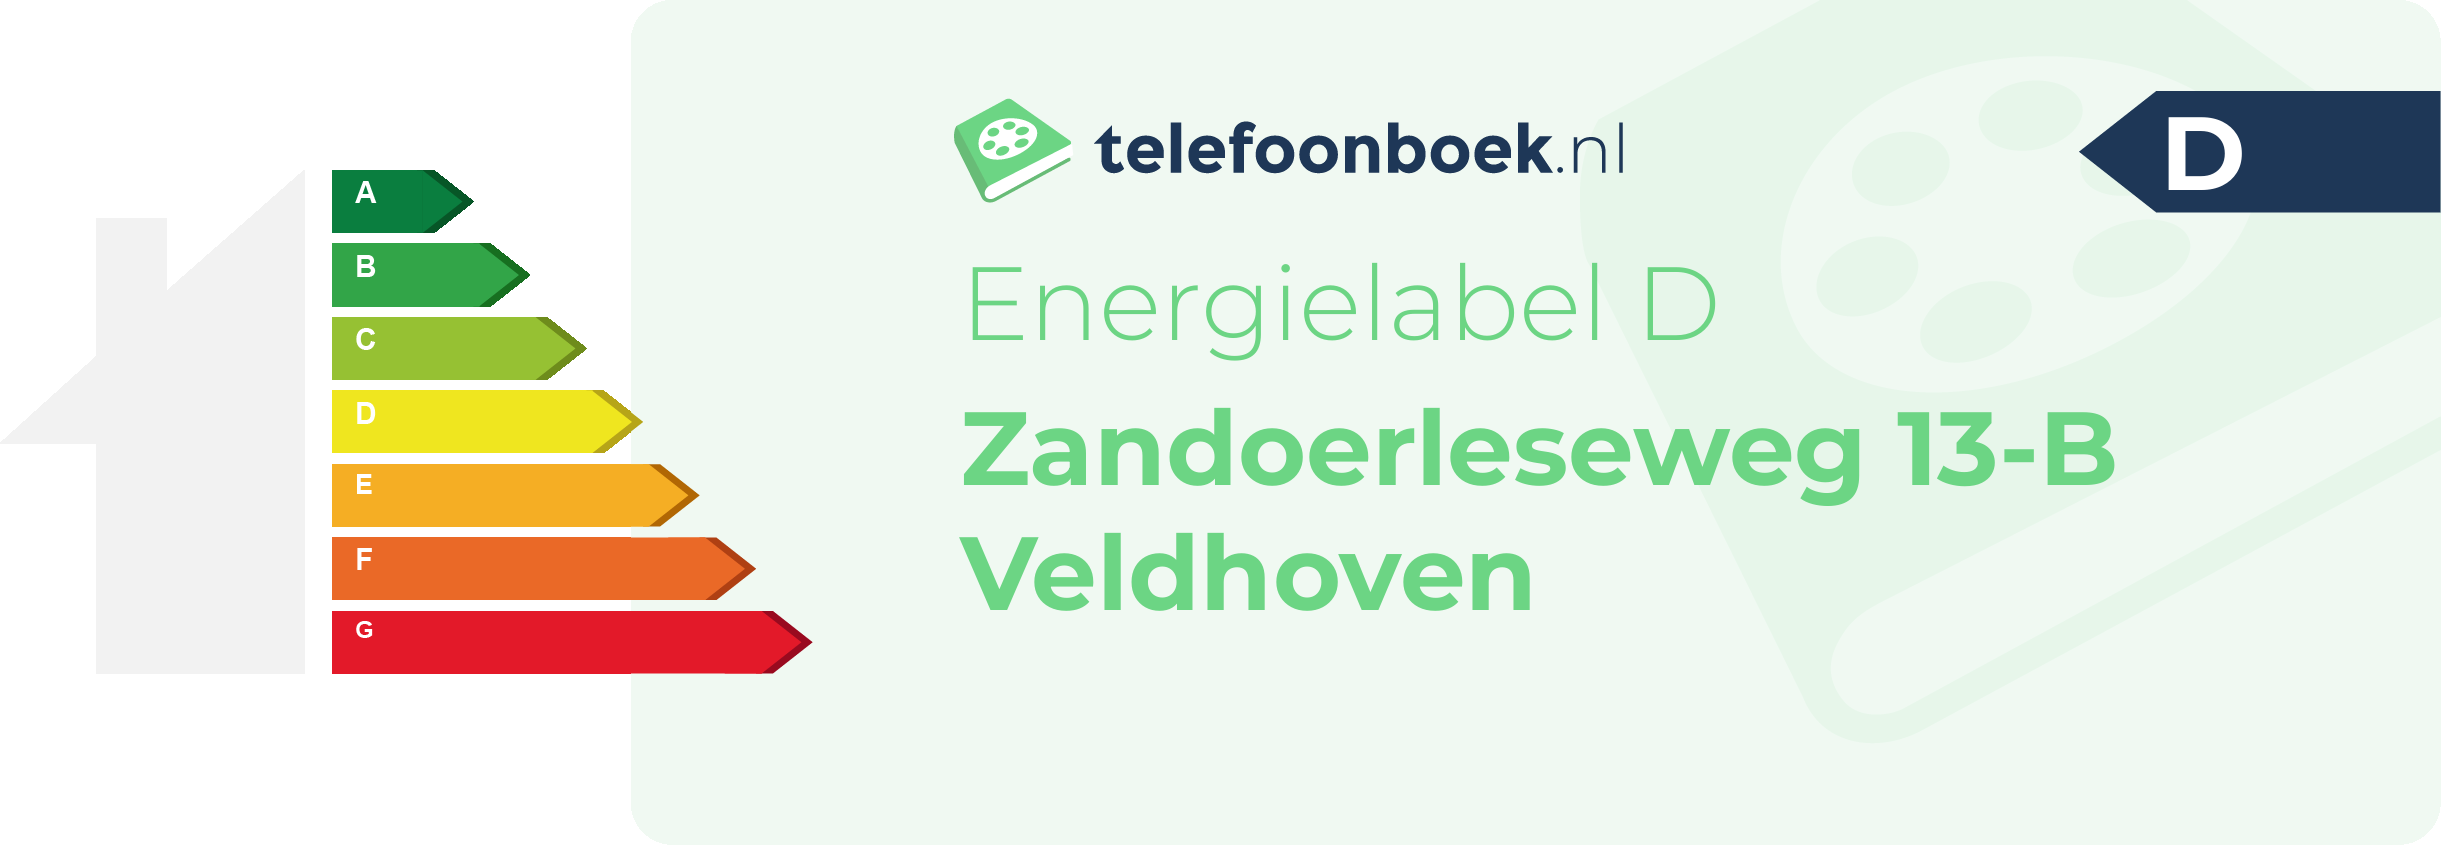 Energielabel Zandoerleseweg 13-B Veldhoven